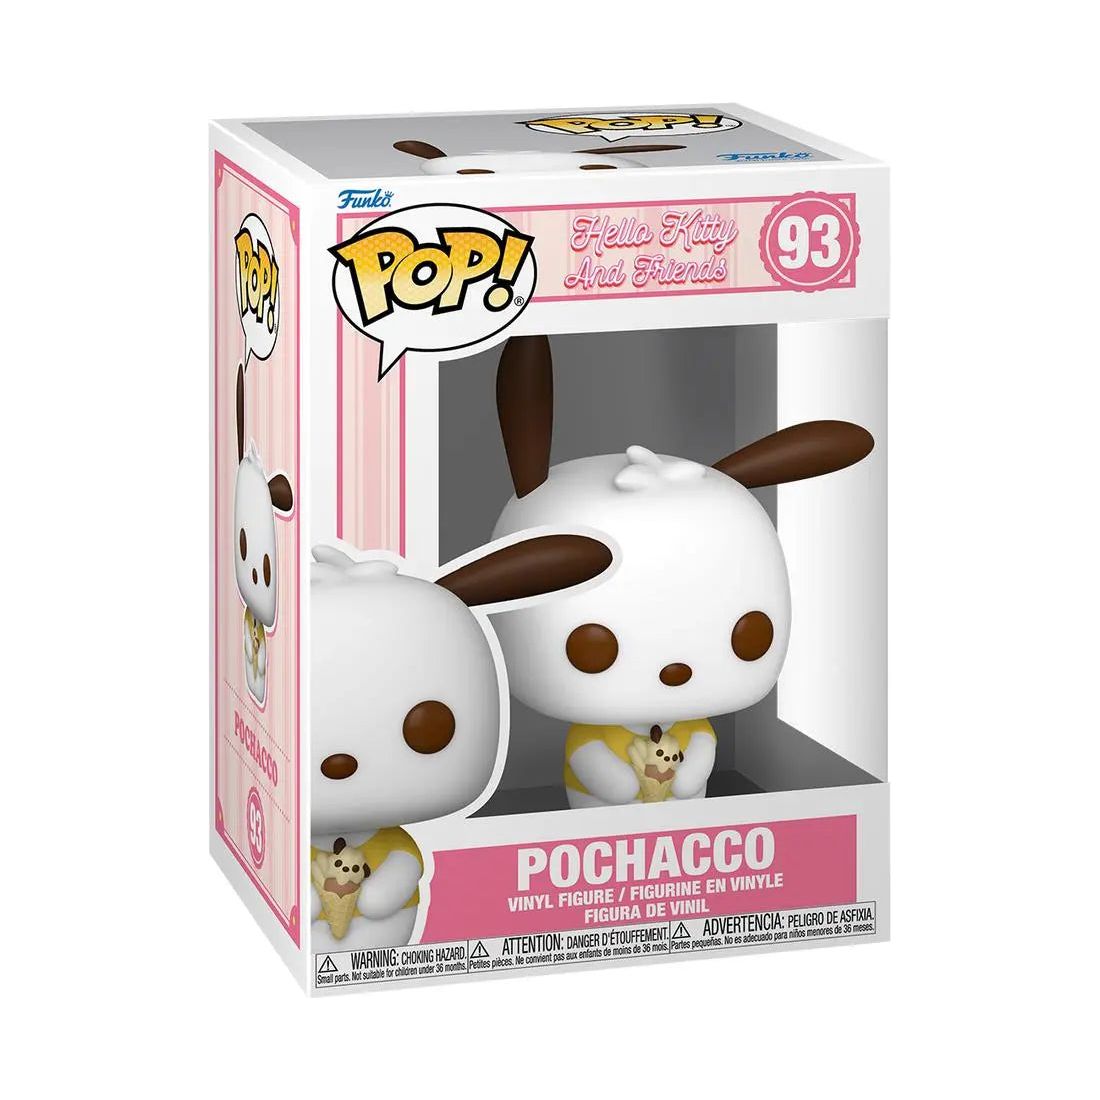 Funko Pop! Hello Kitty And Friends 93 Pochacco Funko